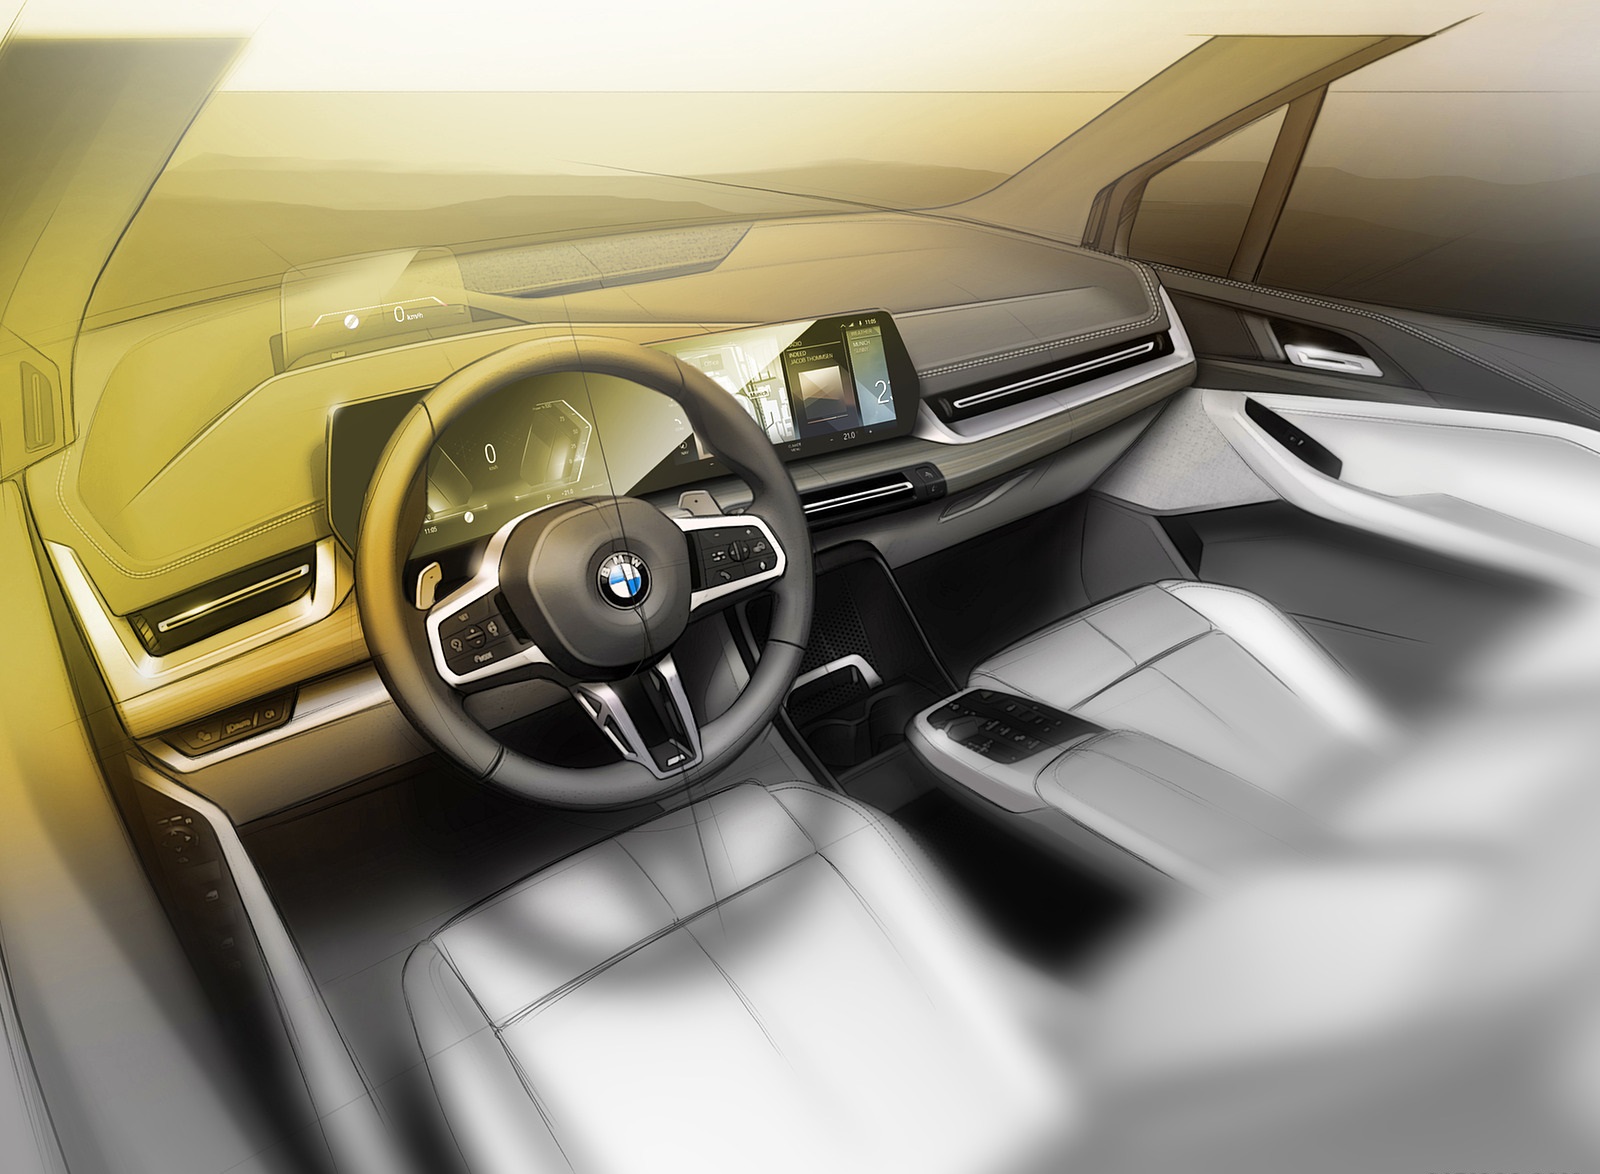 2022 BMW 223i Active Tourer Design Sketch Wallpapers  #86 of 231